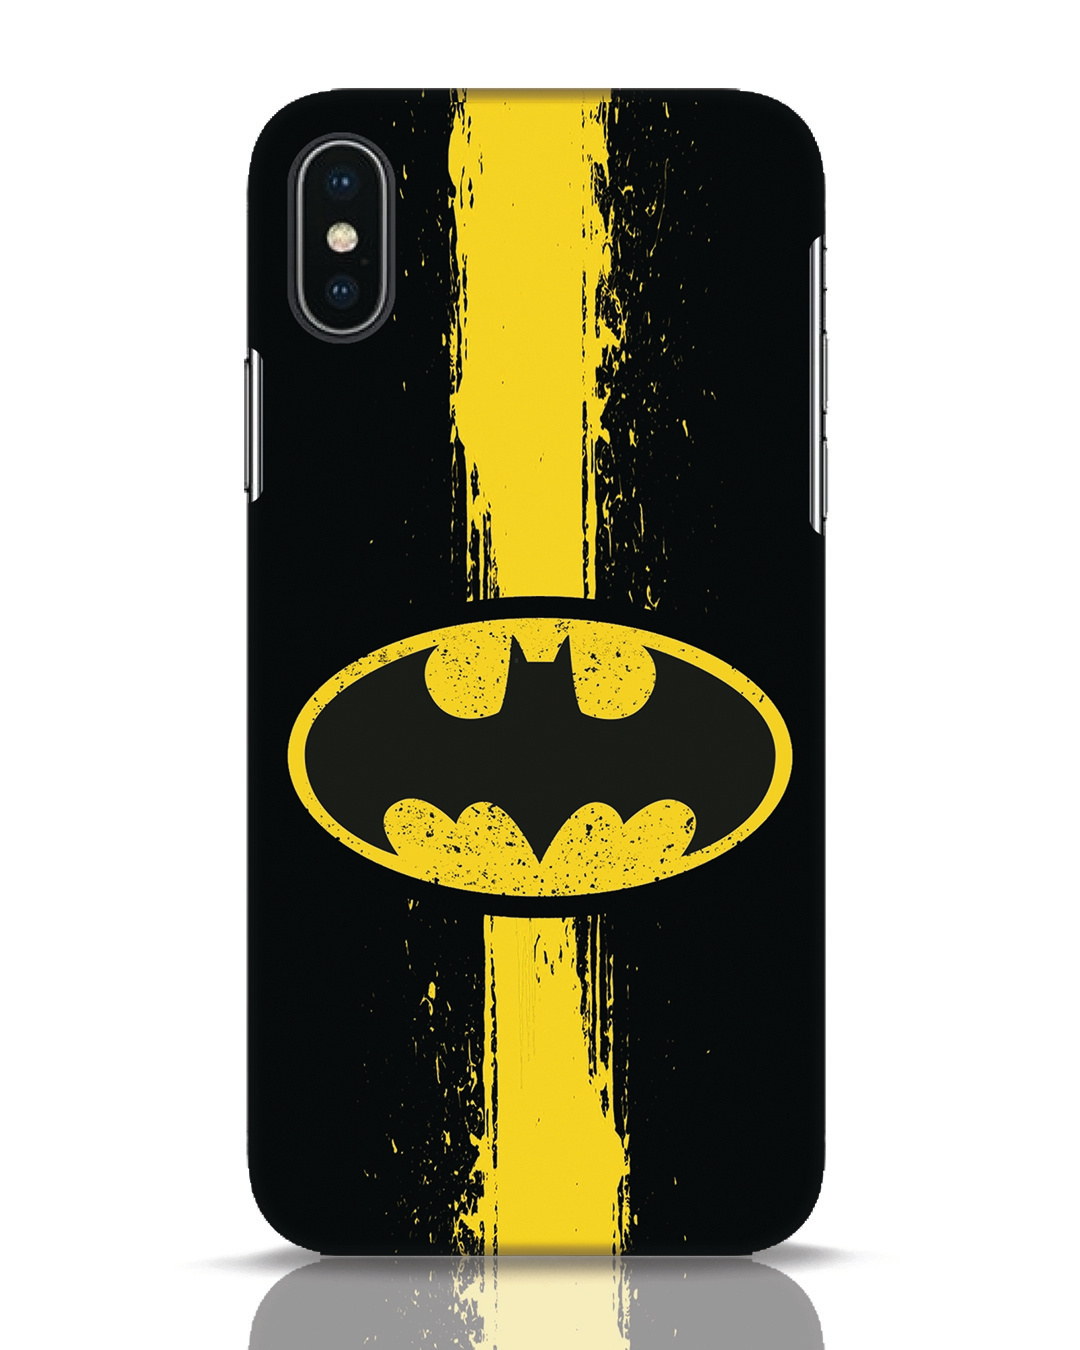 Buy Batman Logo iPhone X r Mobile Cover Online in India at Bewakoof